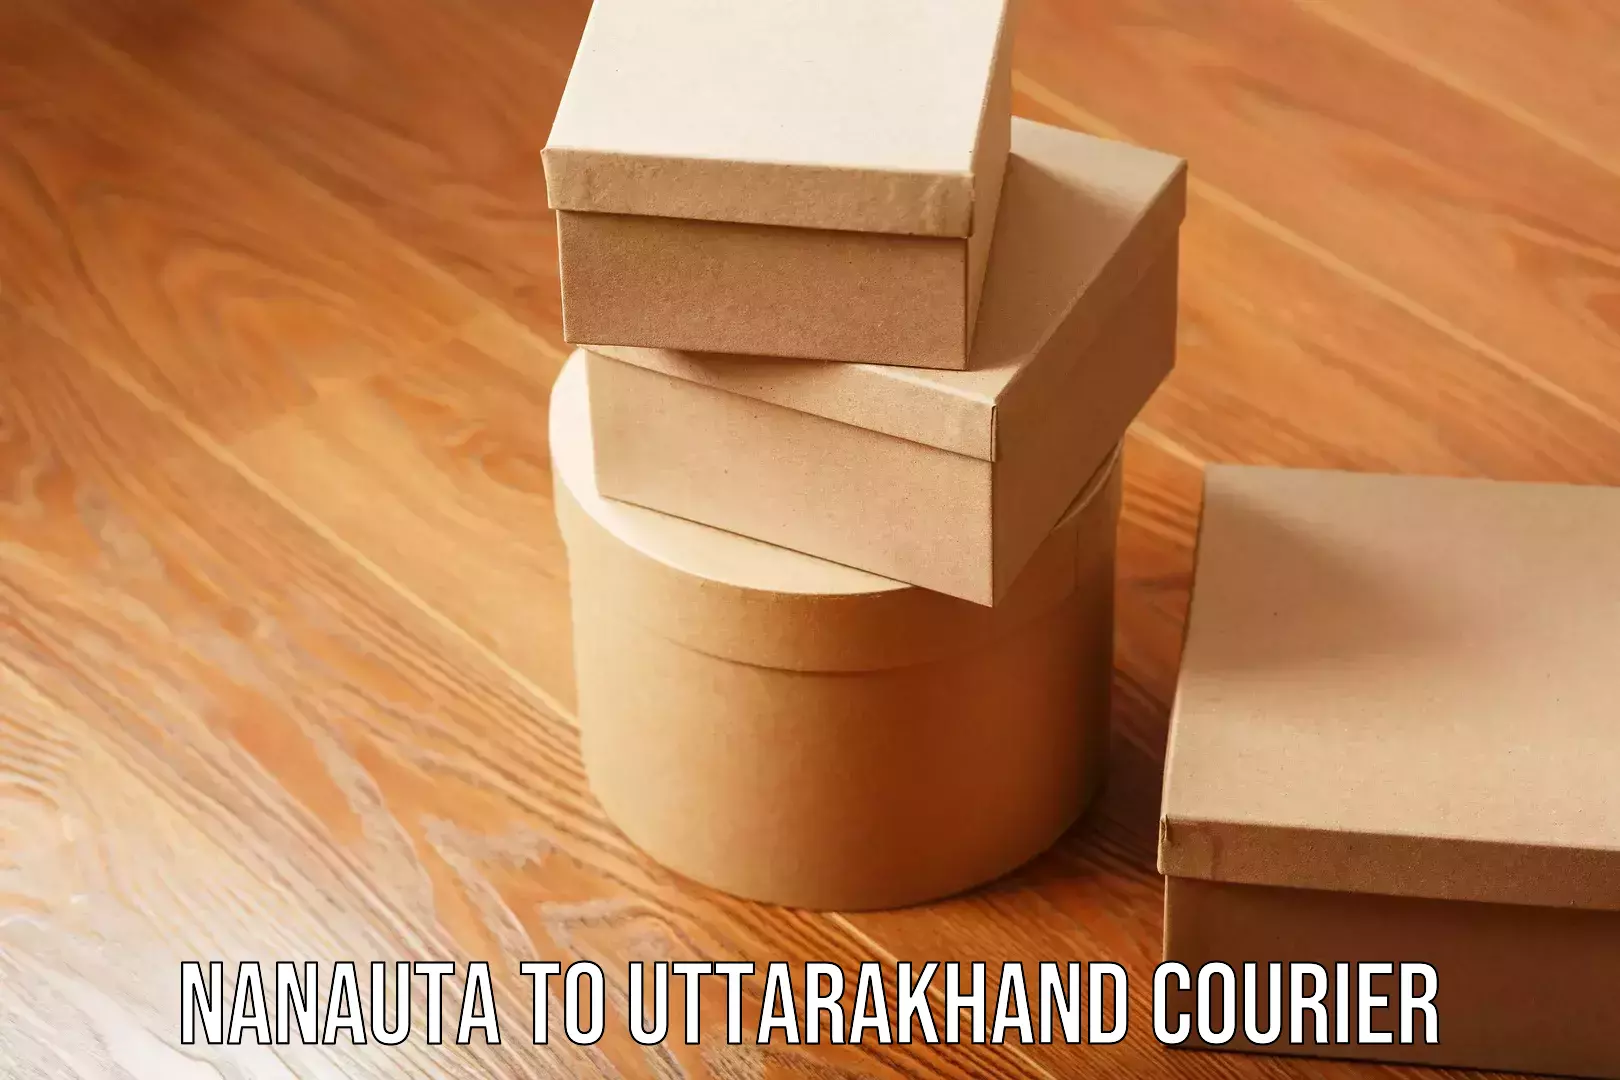 Furniture transport professionals Nanauta to Uttarakhand